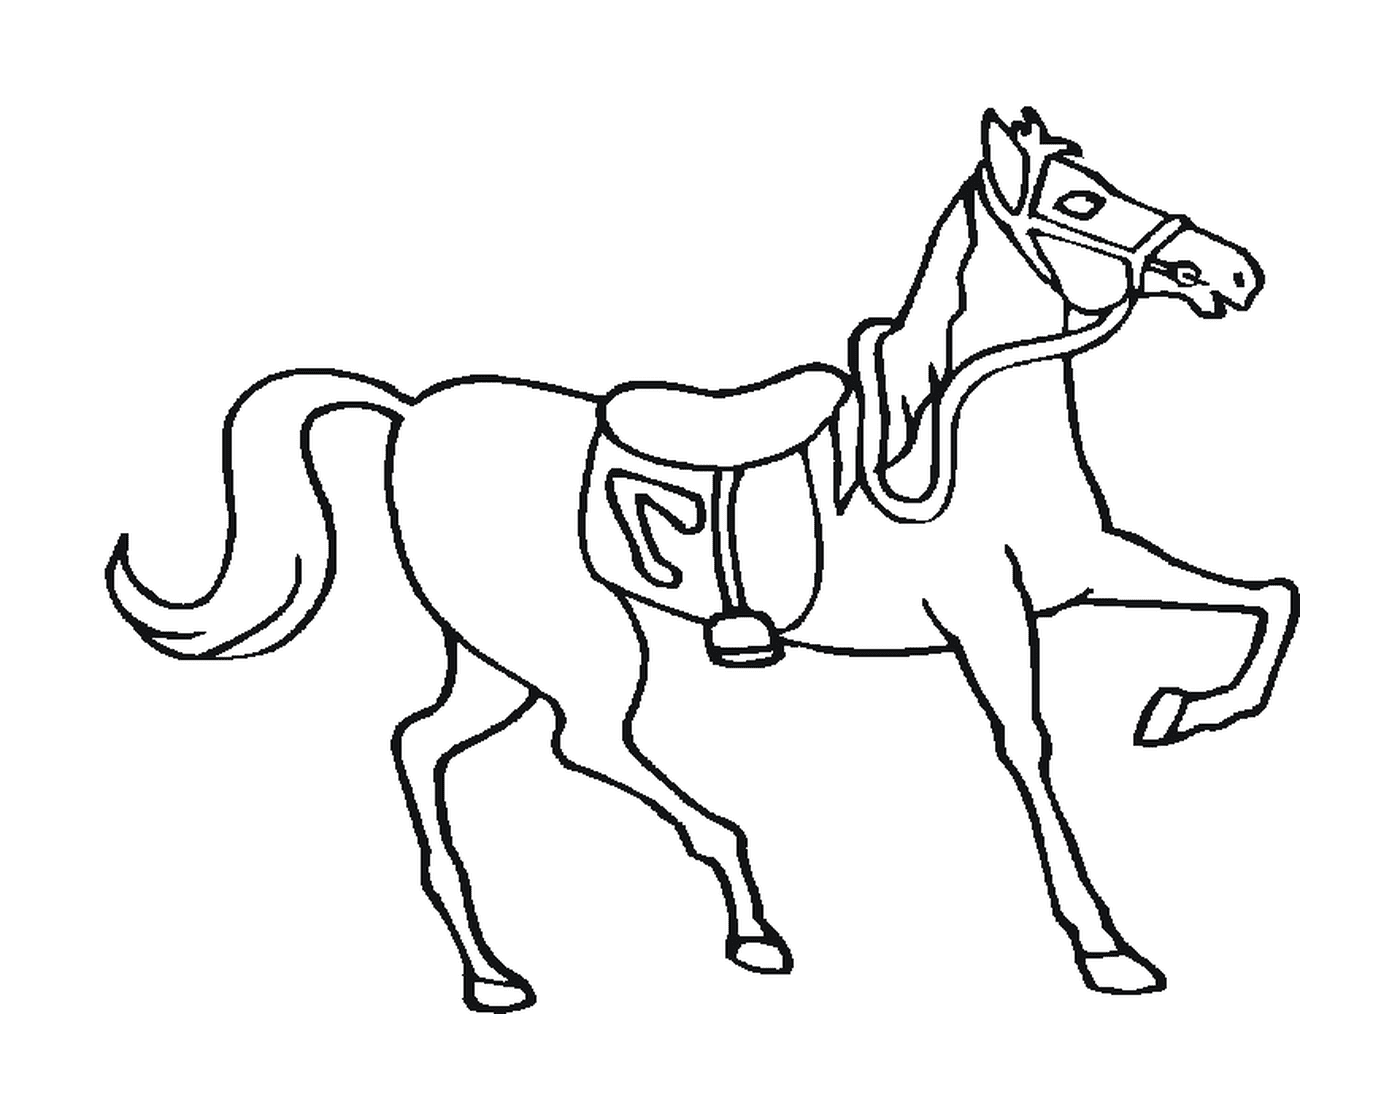  Величественная лошадь с седлом на спине 